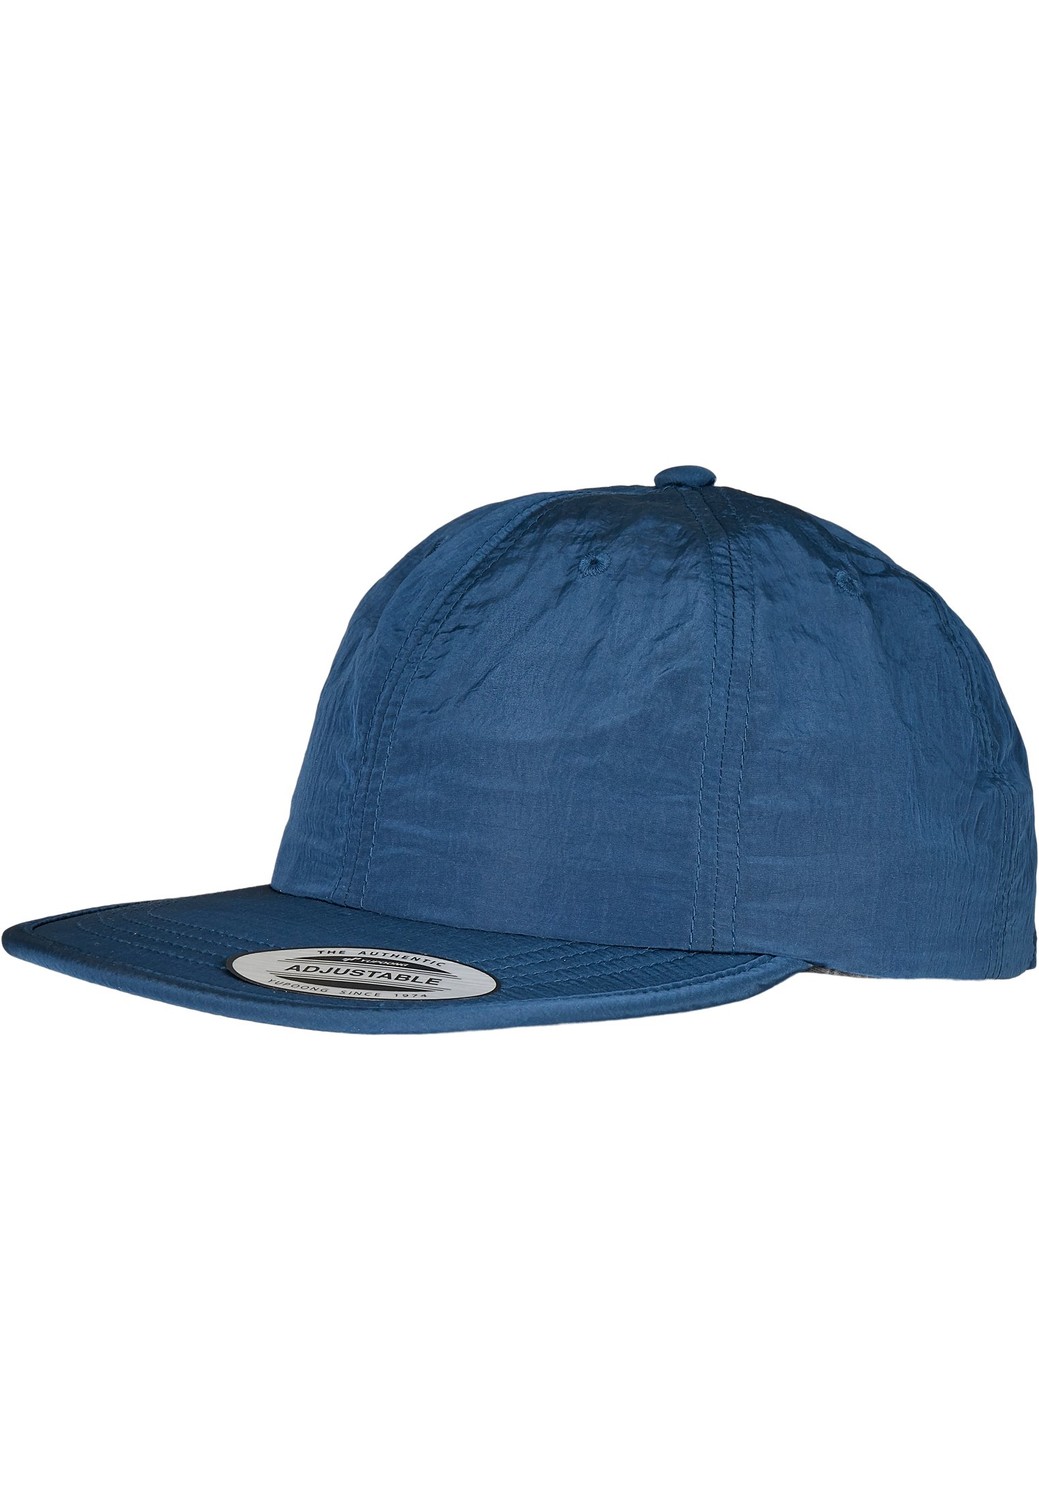 Nastavitelná nylonová čepice modrá